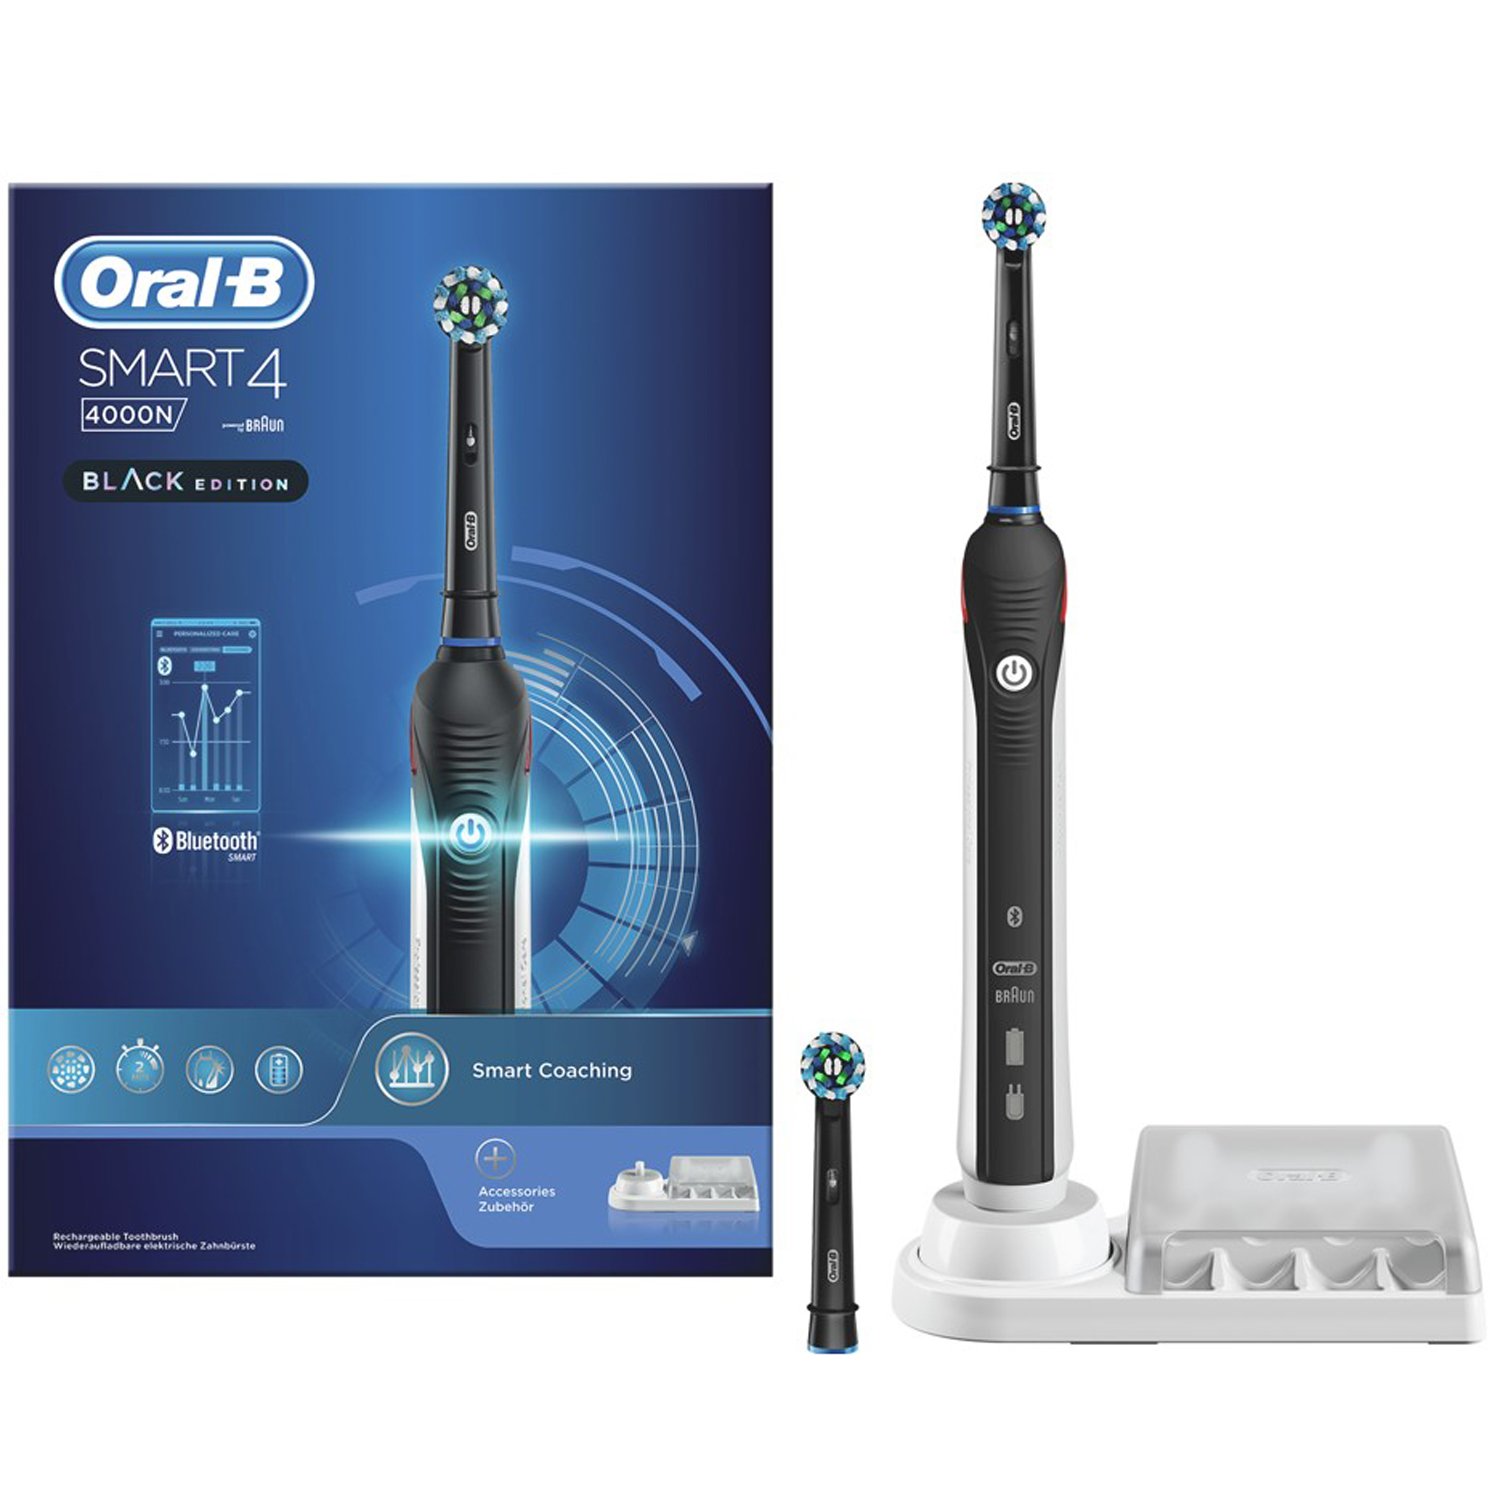 Läs mer om Oral B Eltandborste Smart 4 - 4000N Black Edition